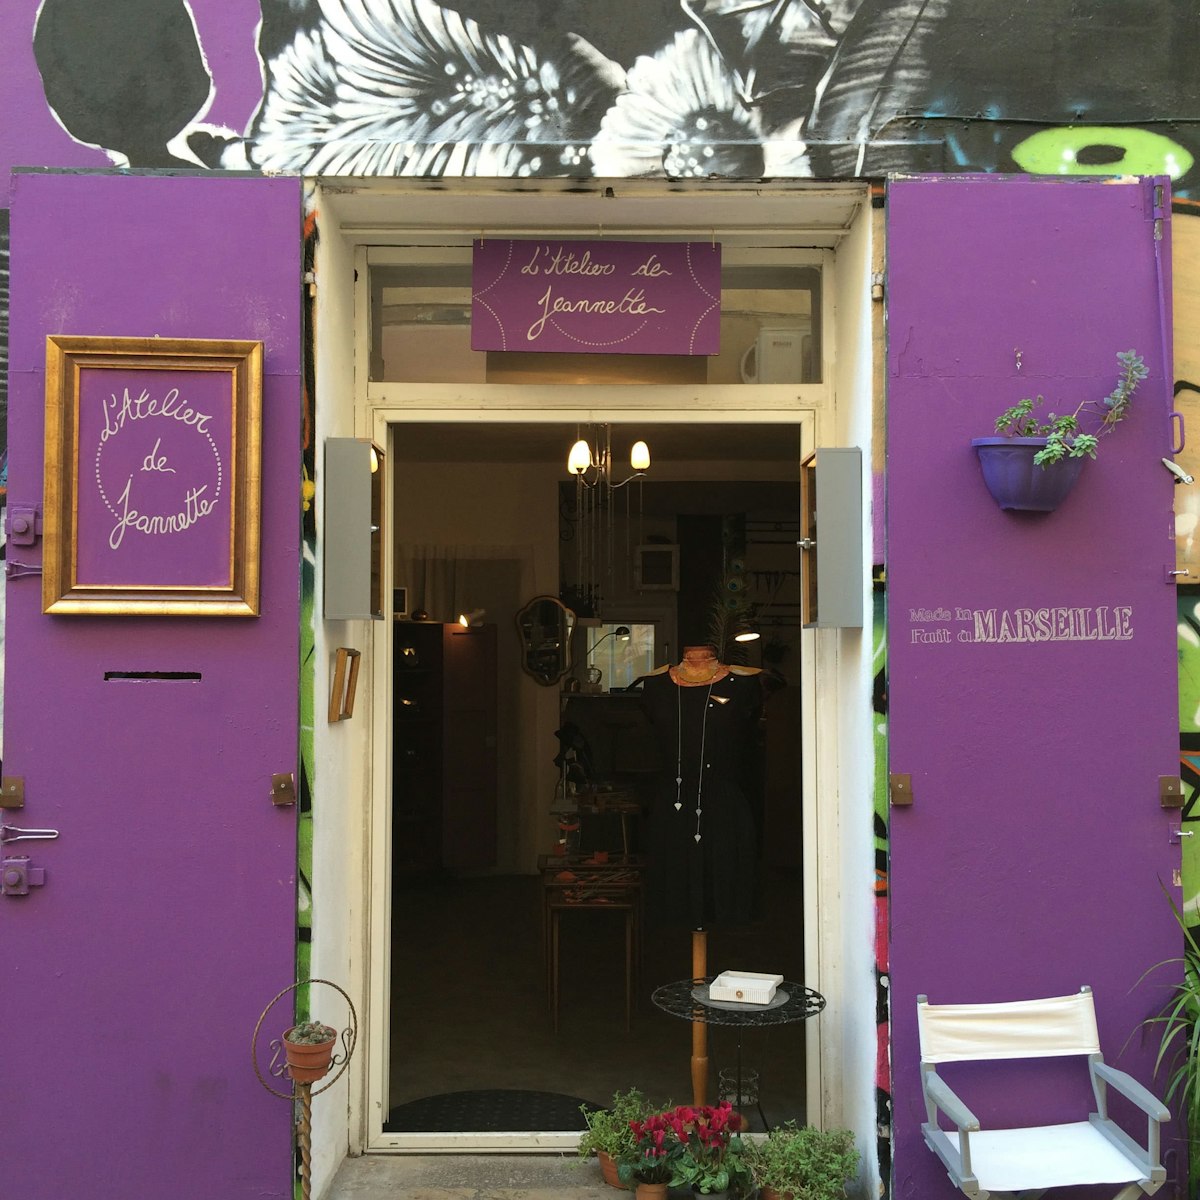 L'Atelier de Jeannette, artisan jeweller in the Cours Julien neighborhood of Marseille, France.